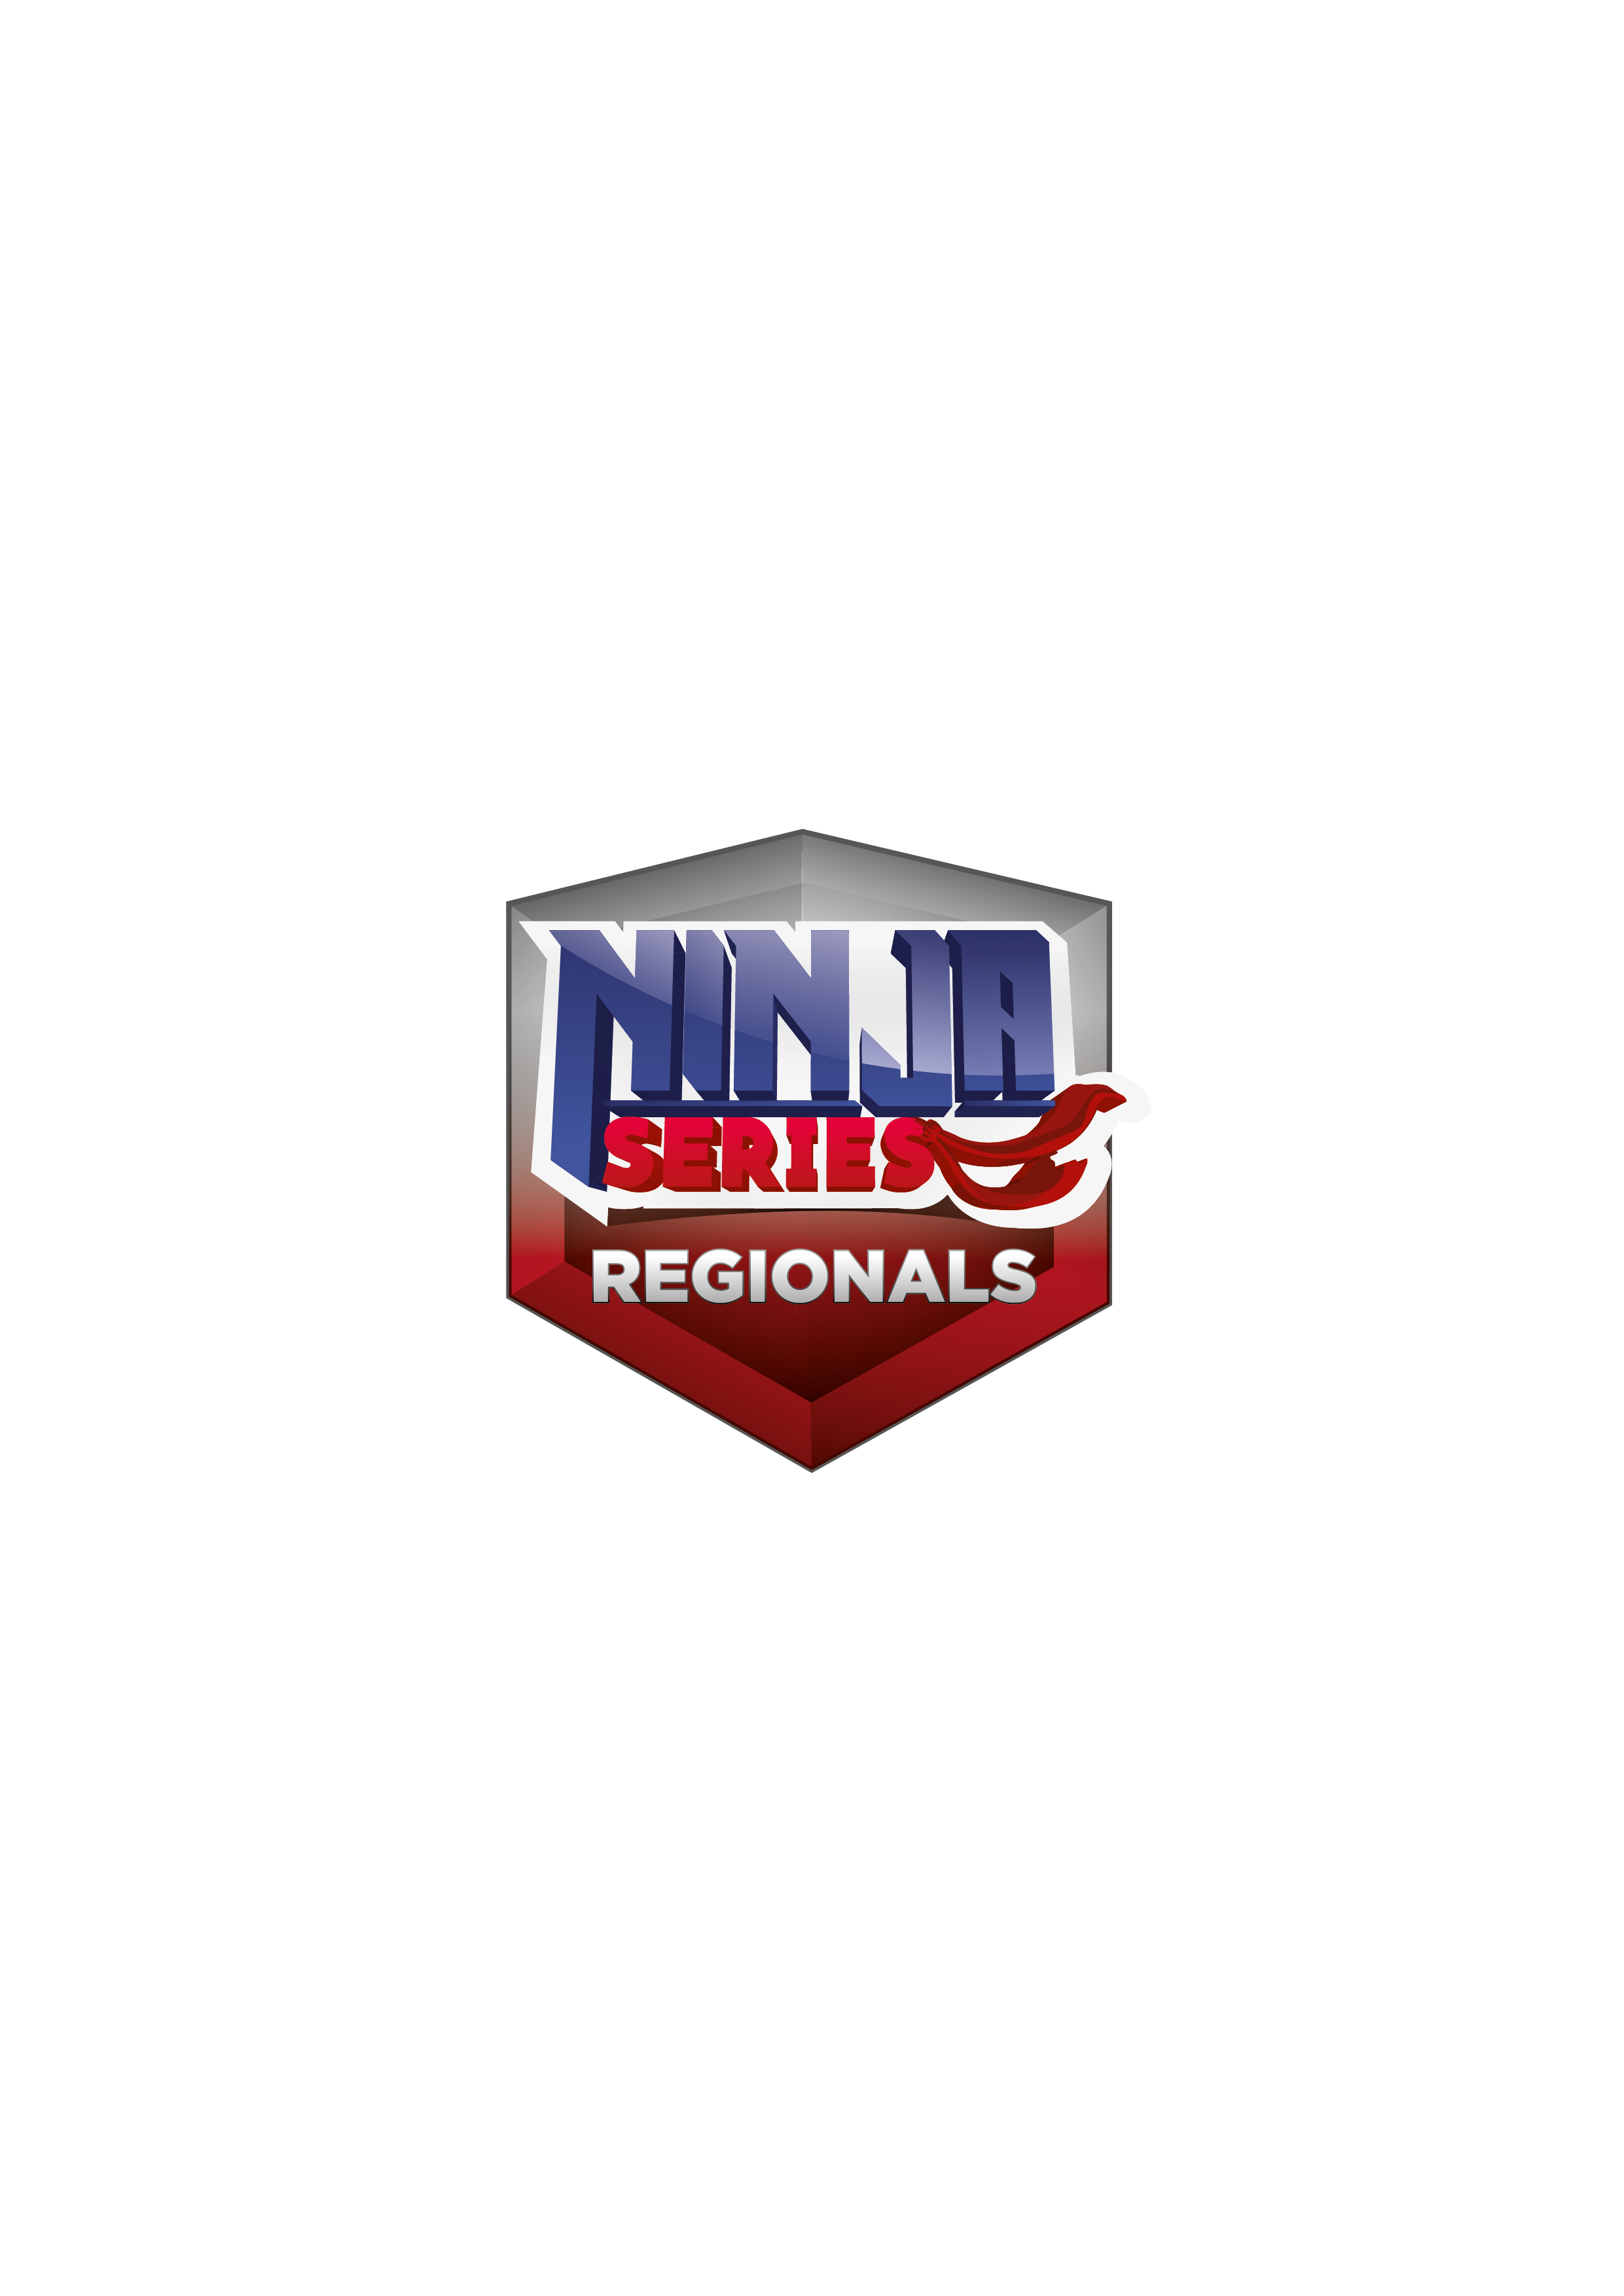 Ninja Series Regionals / OSPRO